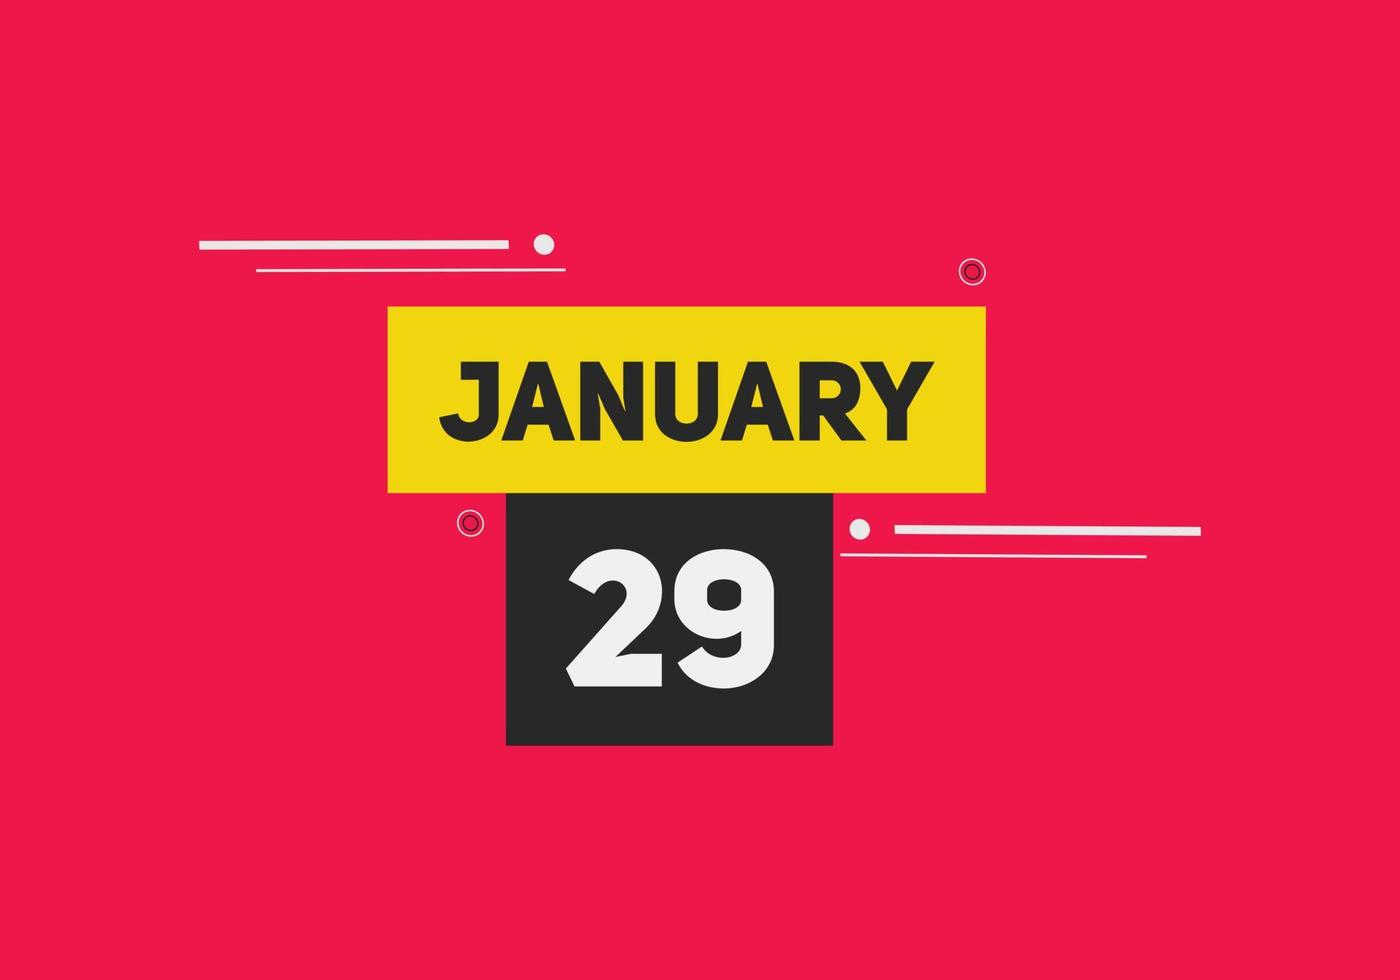 lembrete de calendário de 29 de janeiro. 29 de janeiro modelo de ícone de calendário diário. modelo de design de ícone de calendário 29 de janeiro. ilustração vetorial vetor